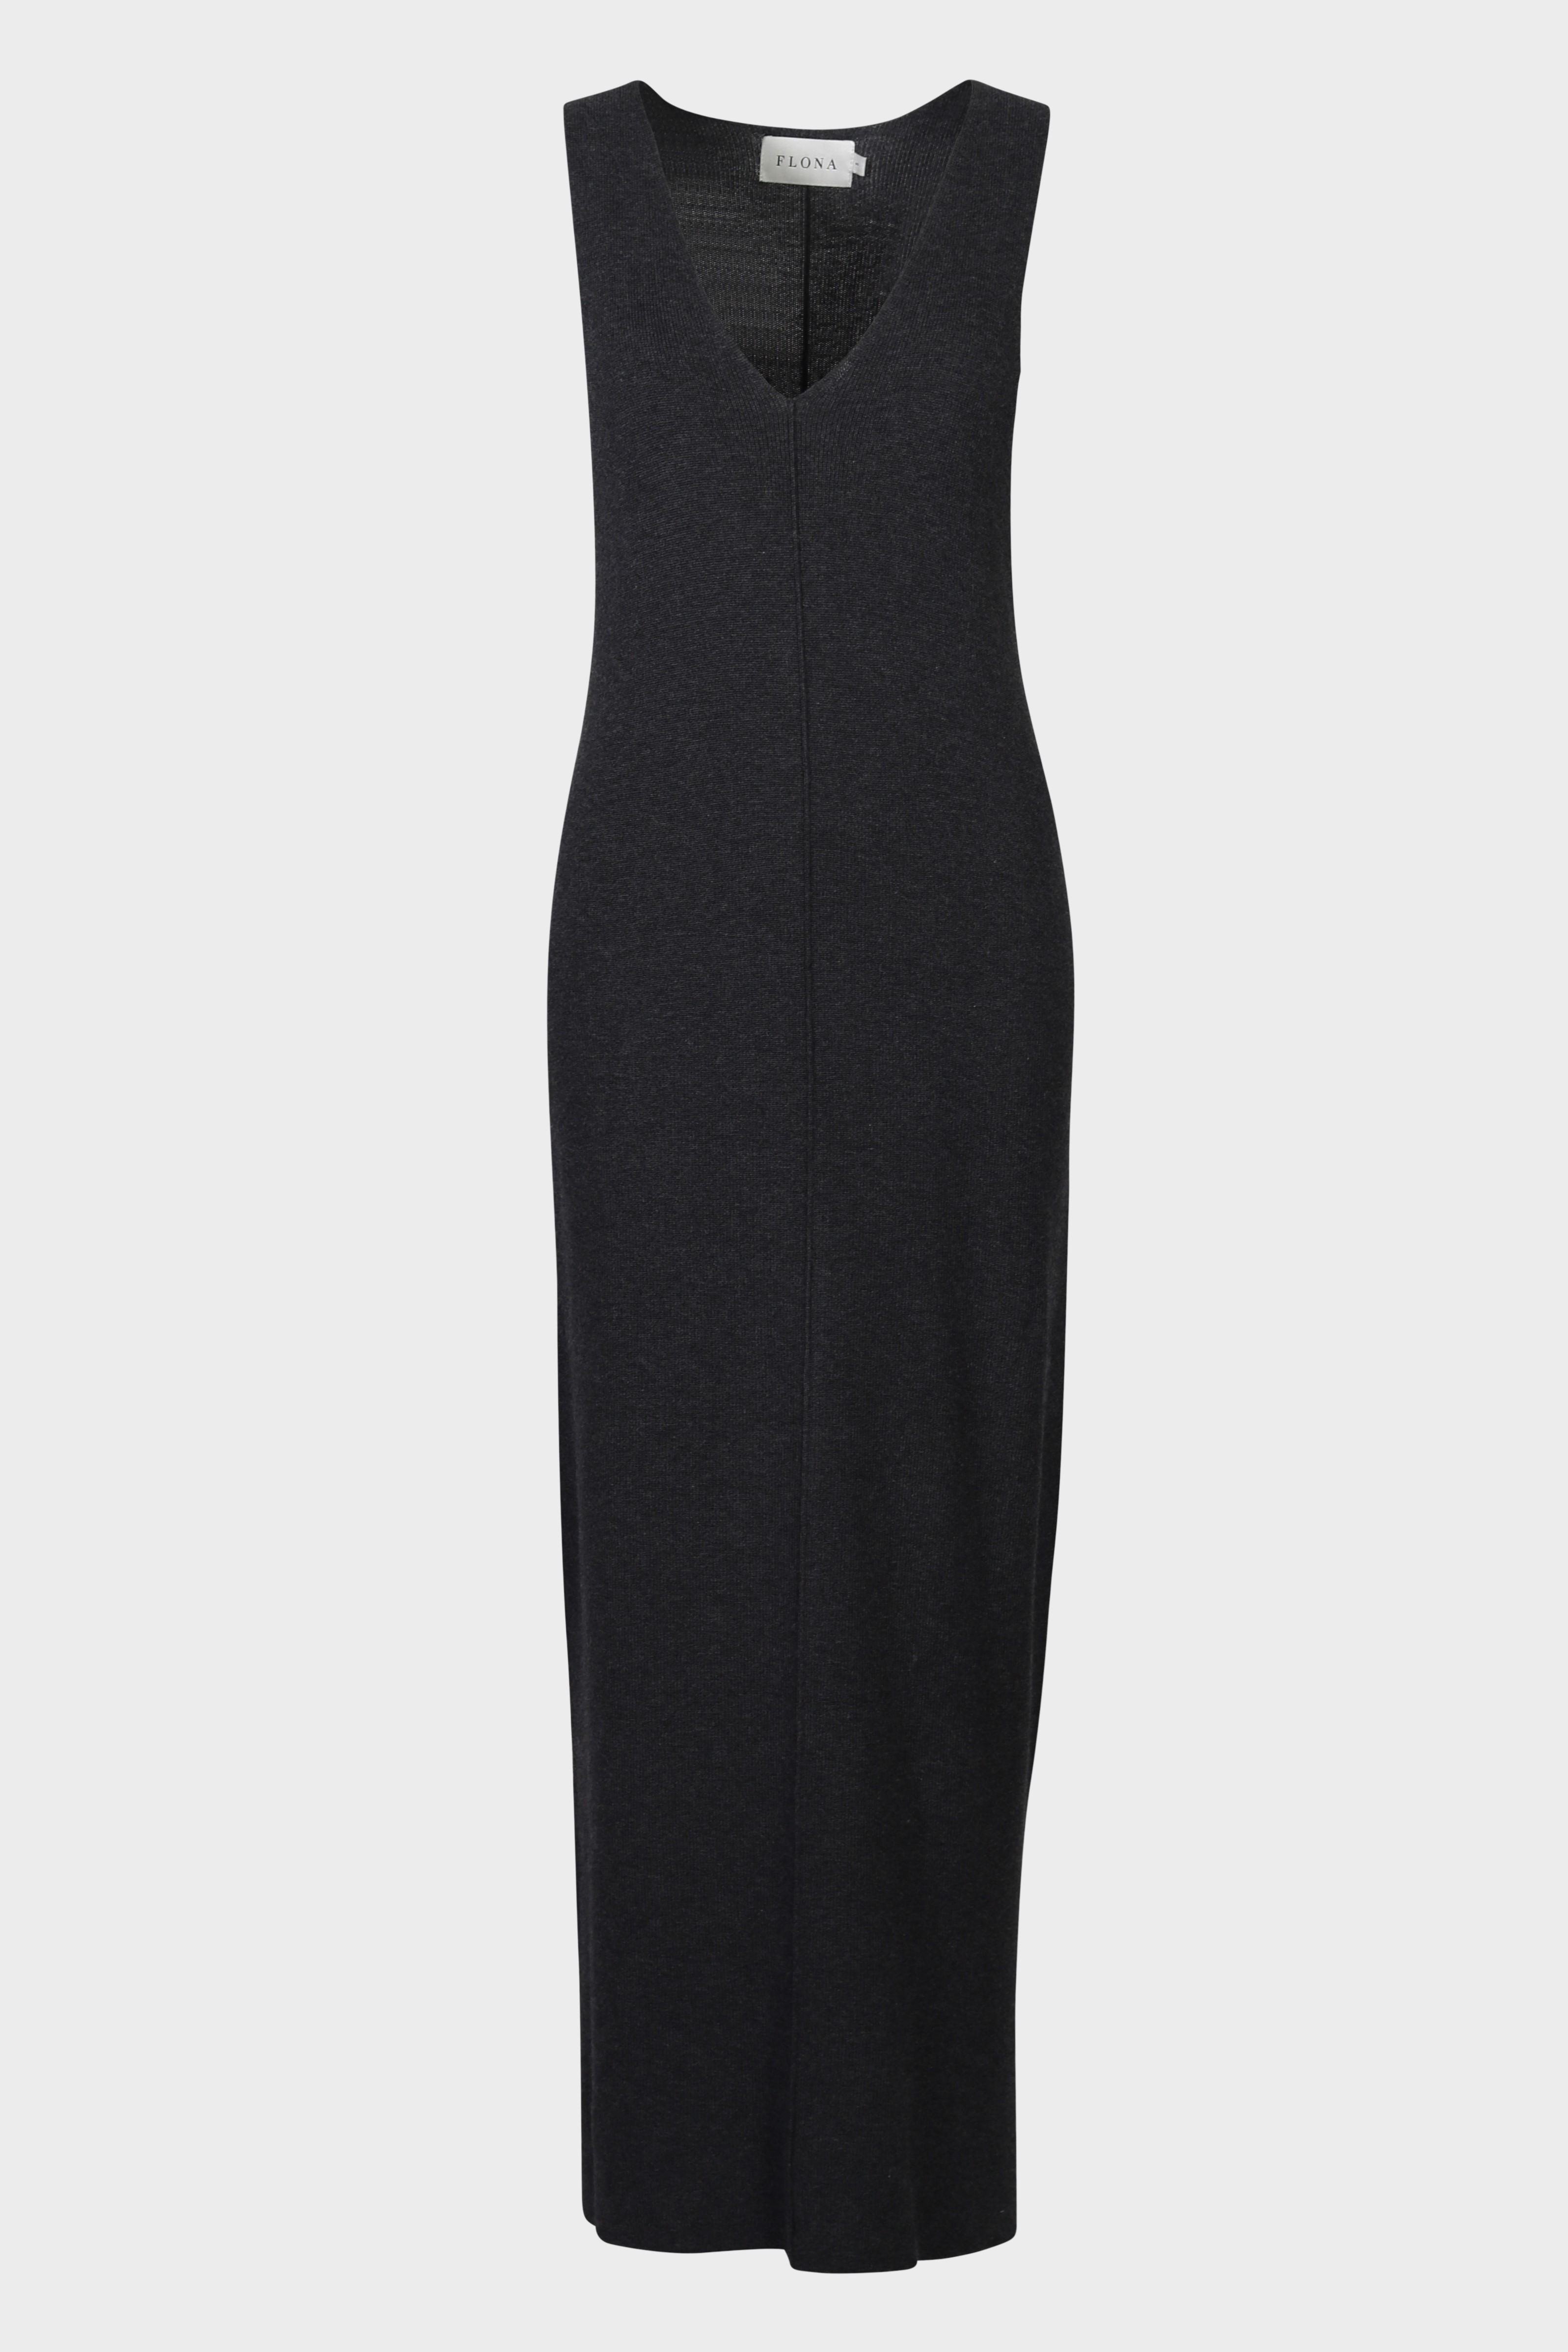 FLONA Cotton/ Cashmere Knit Dress in Dark Grey S